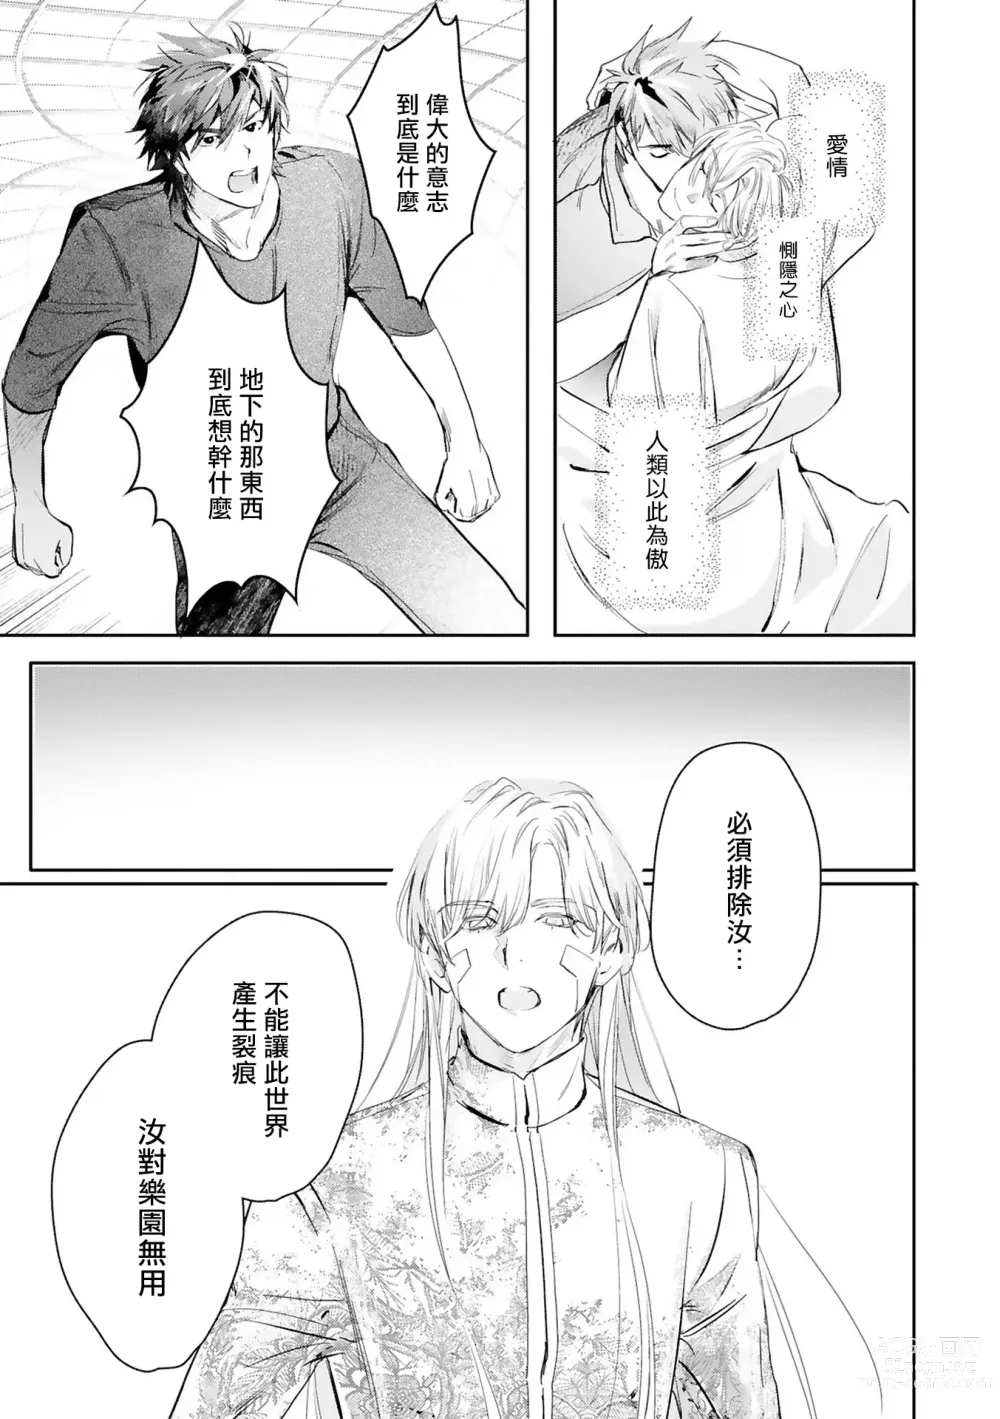 Page 434 of manga 末世青鸟 Ch. 4-10 + 特典 + 11-14